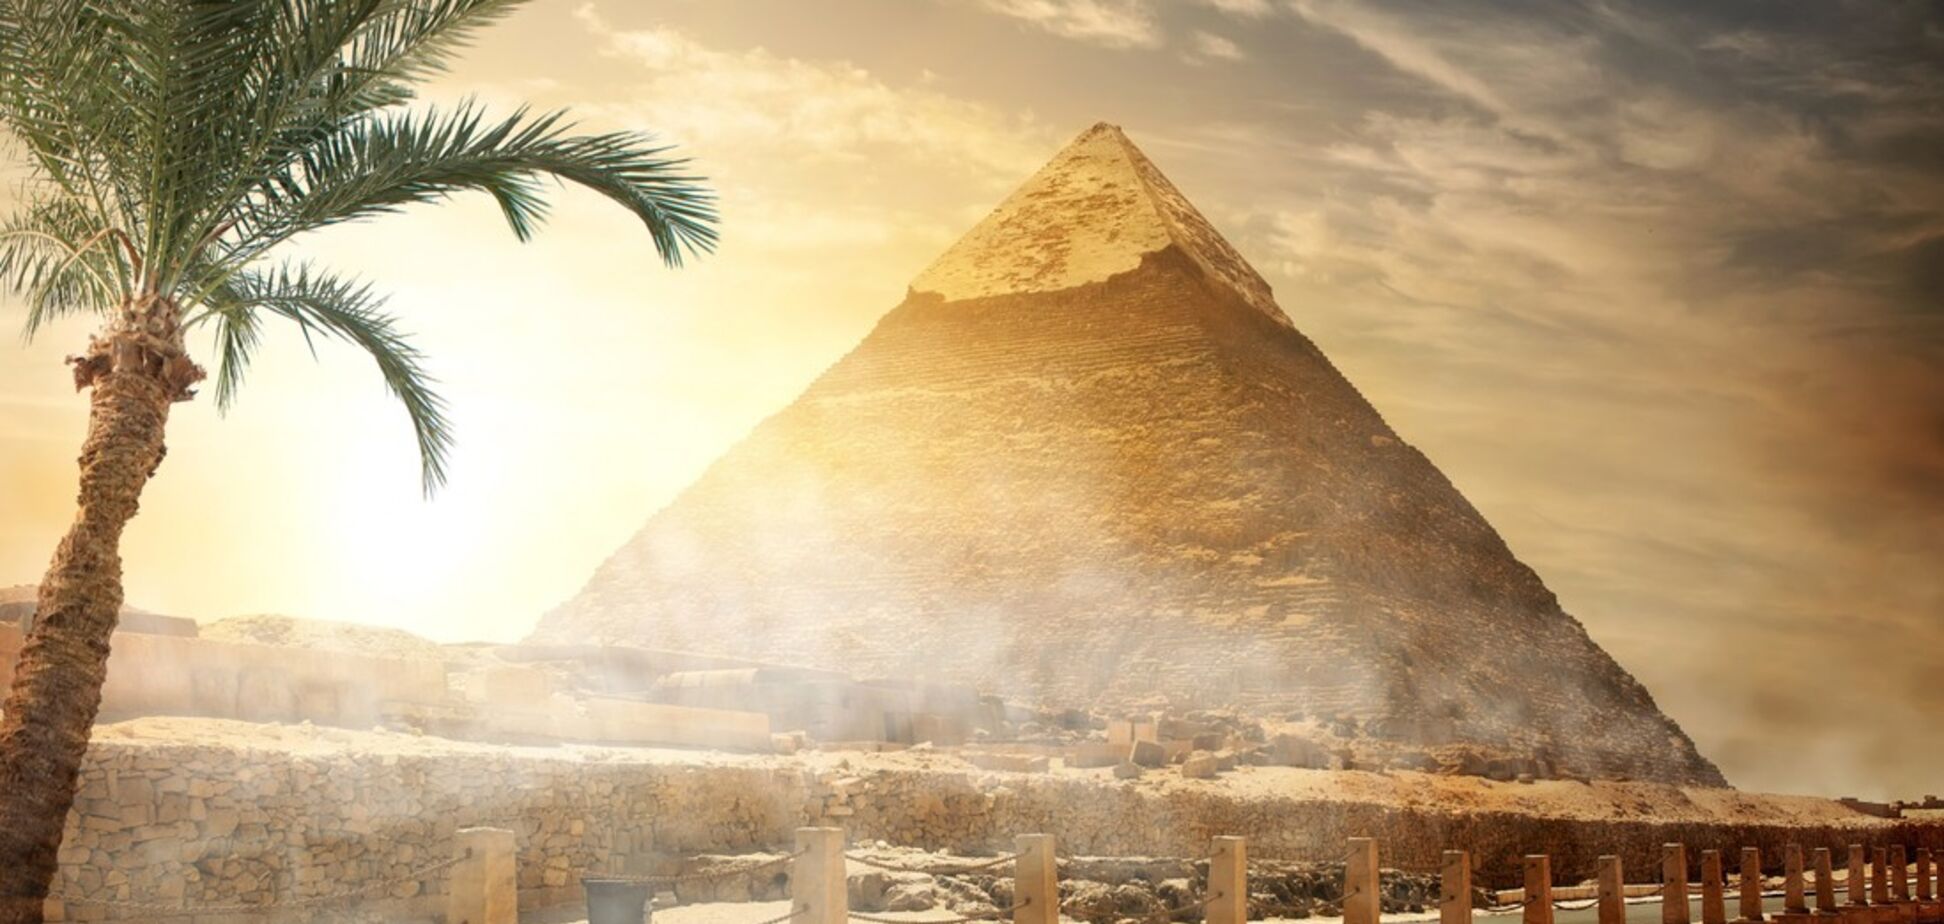 Єгипет запроваджує візи: що потрібно знати туристам перед відпусткою